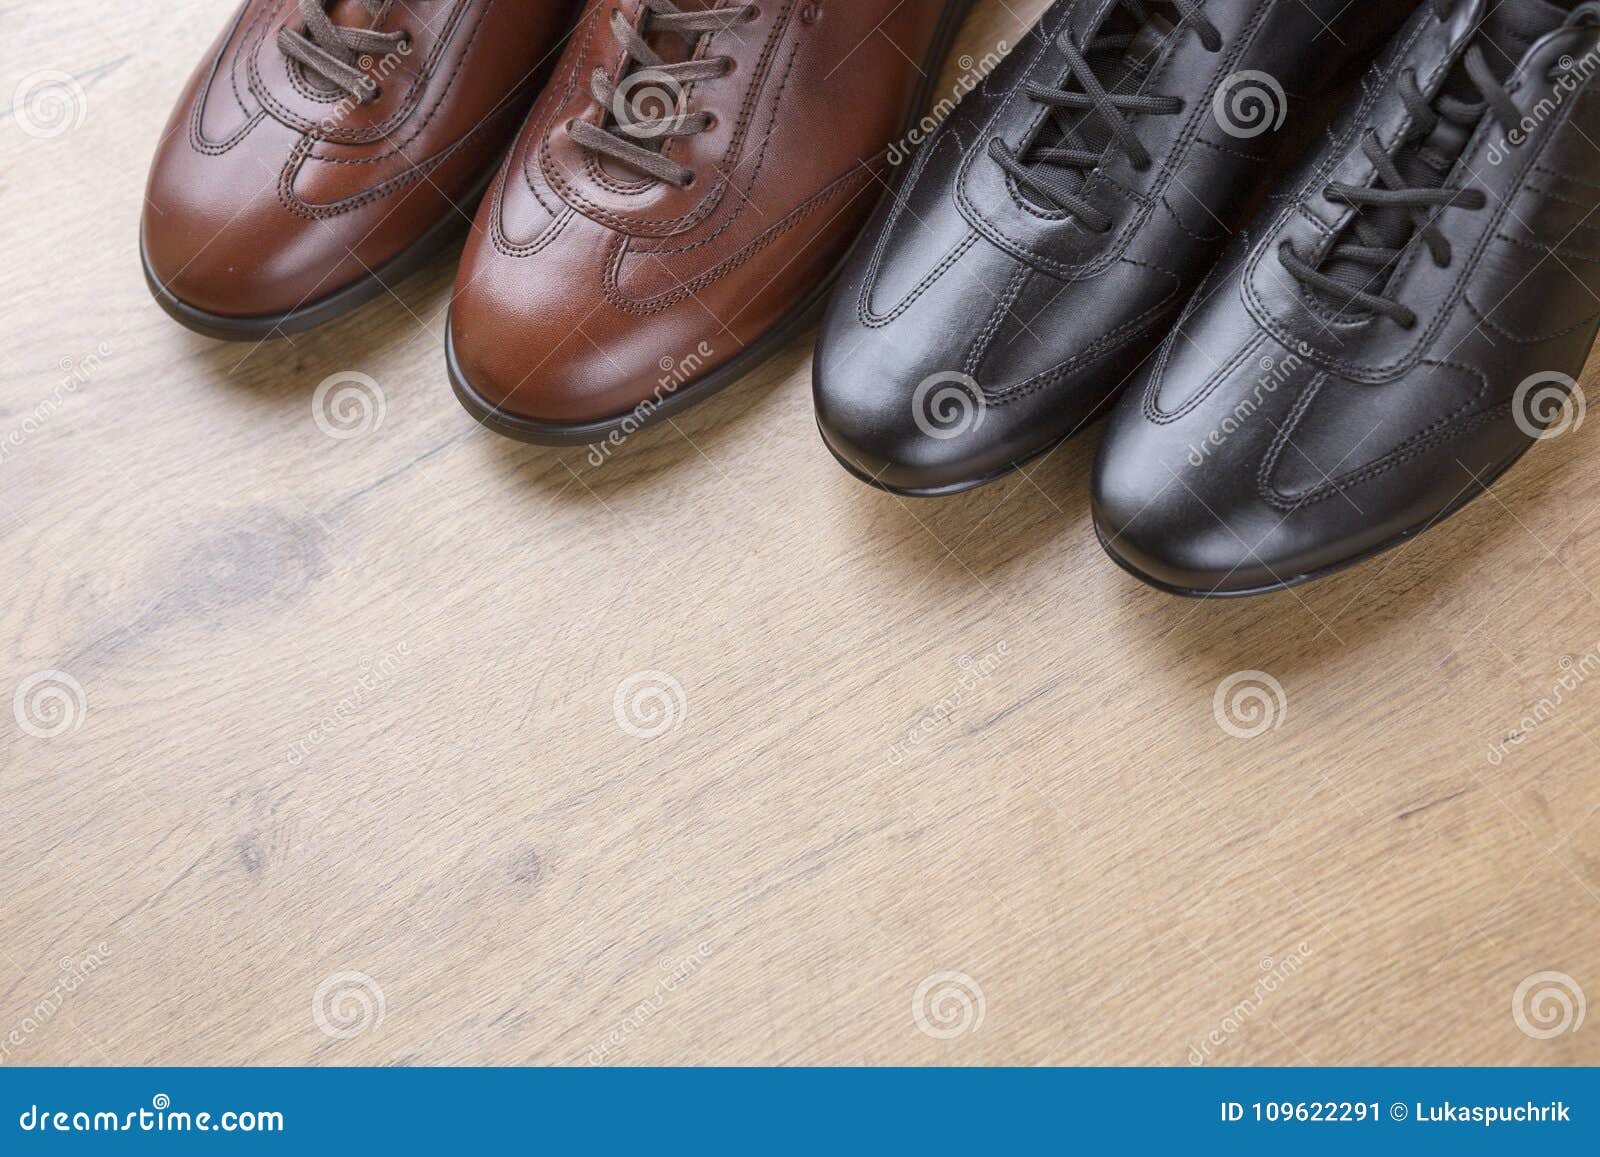 Stylish Men Leather Shoes on Wooden Background Stock Image - Image of ...